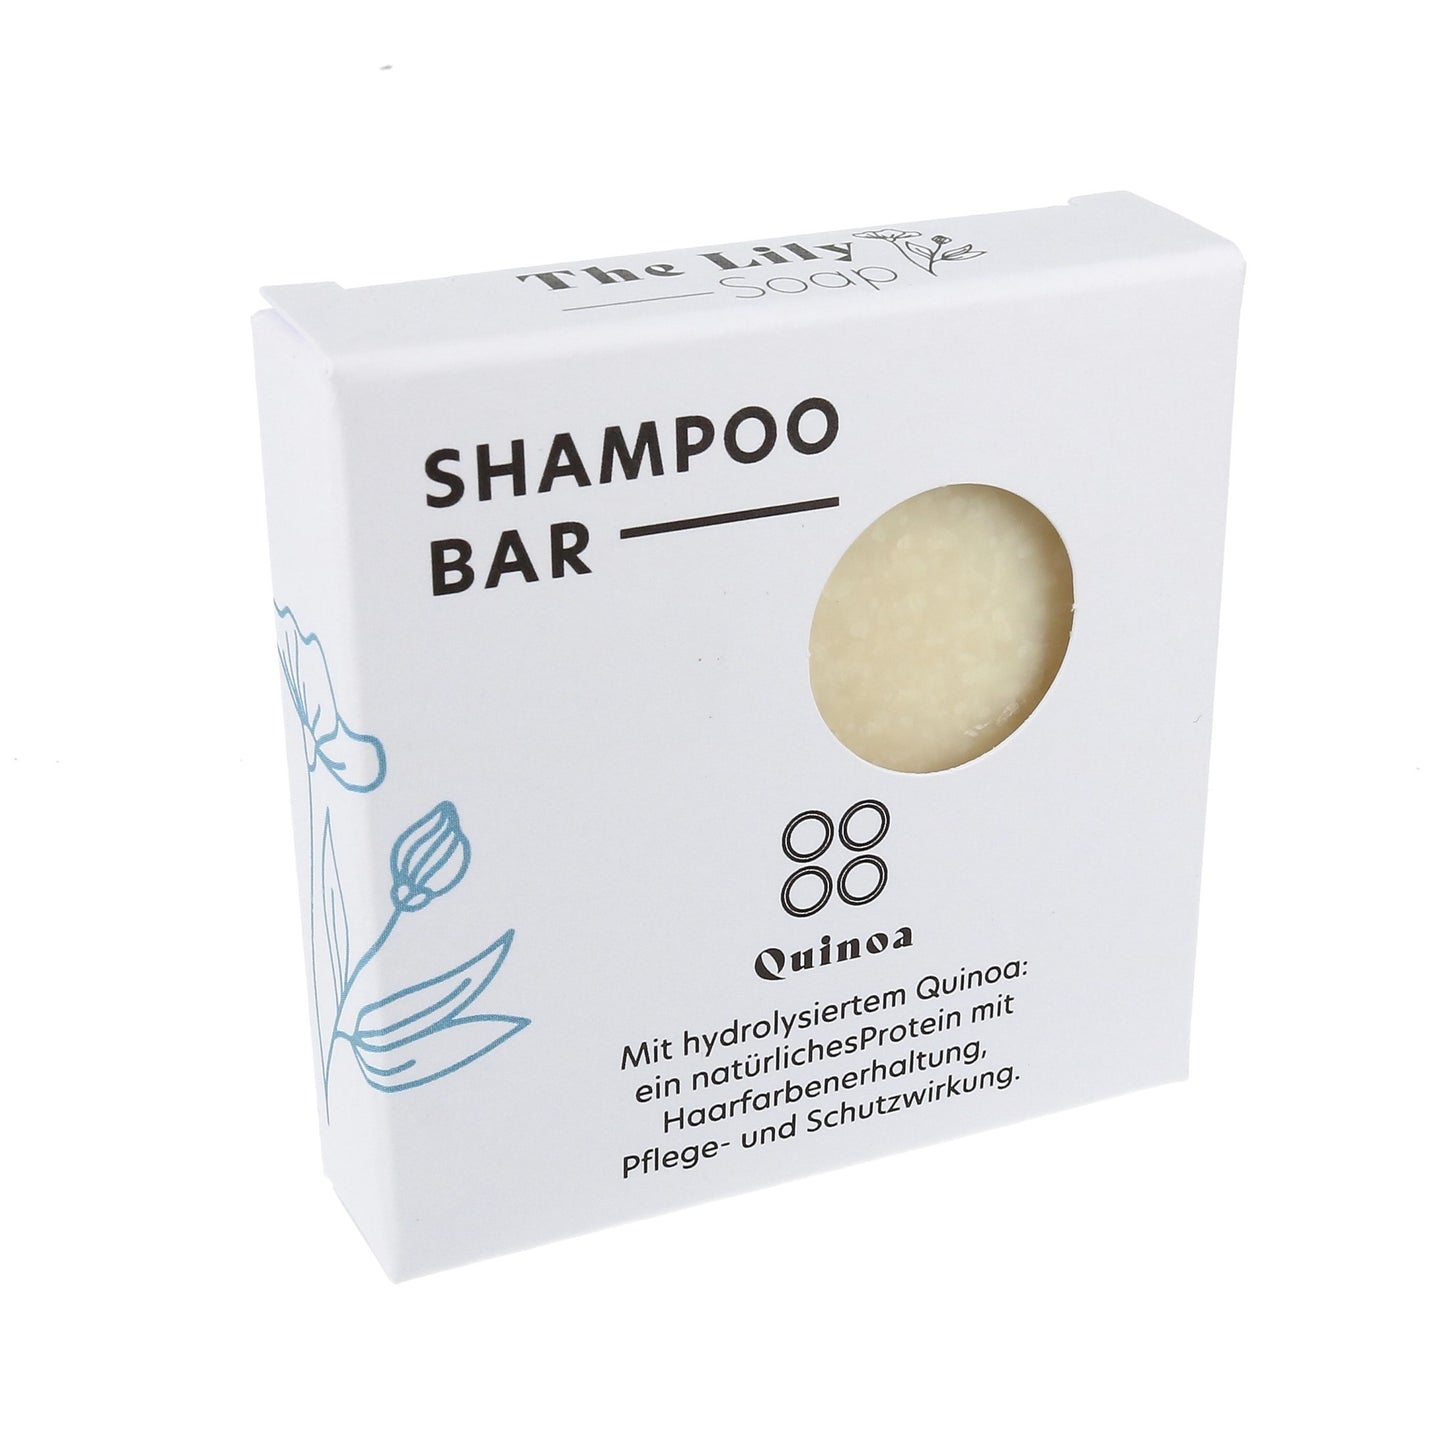 Shampoo Quinoa - Haarfarbeerhaltung